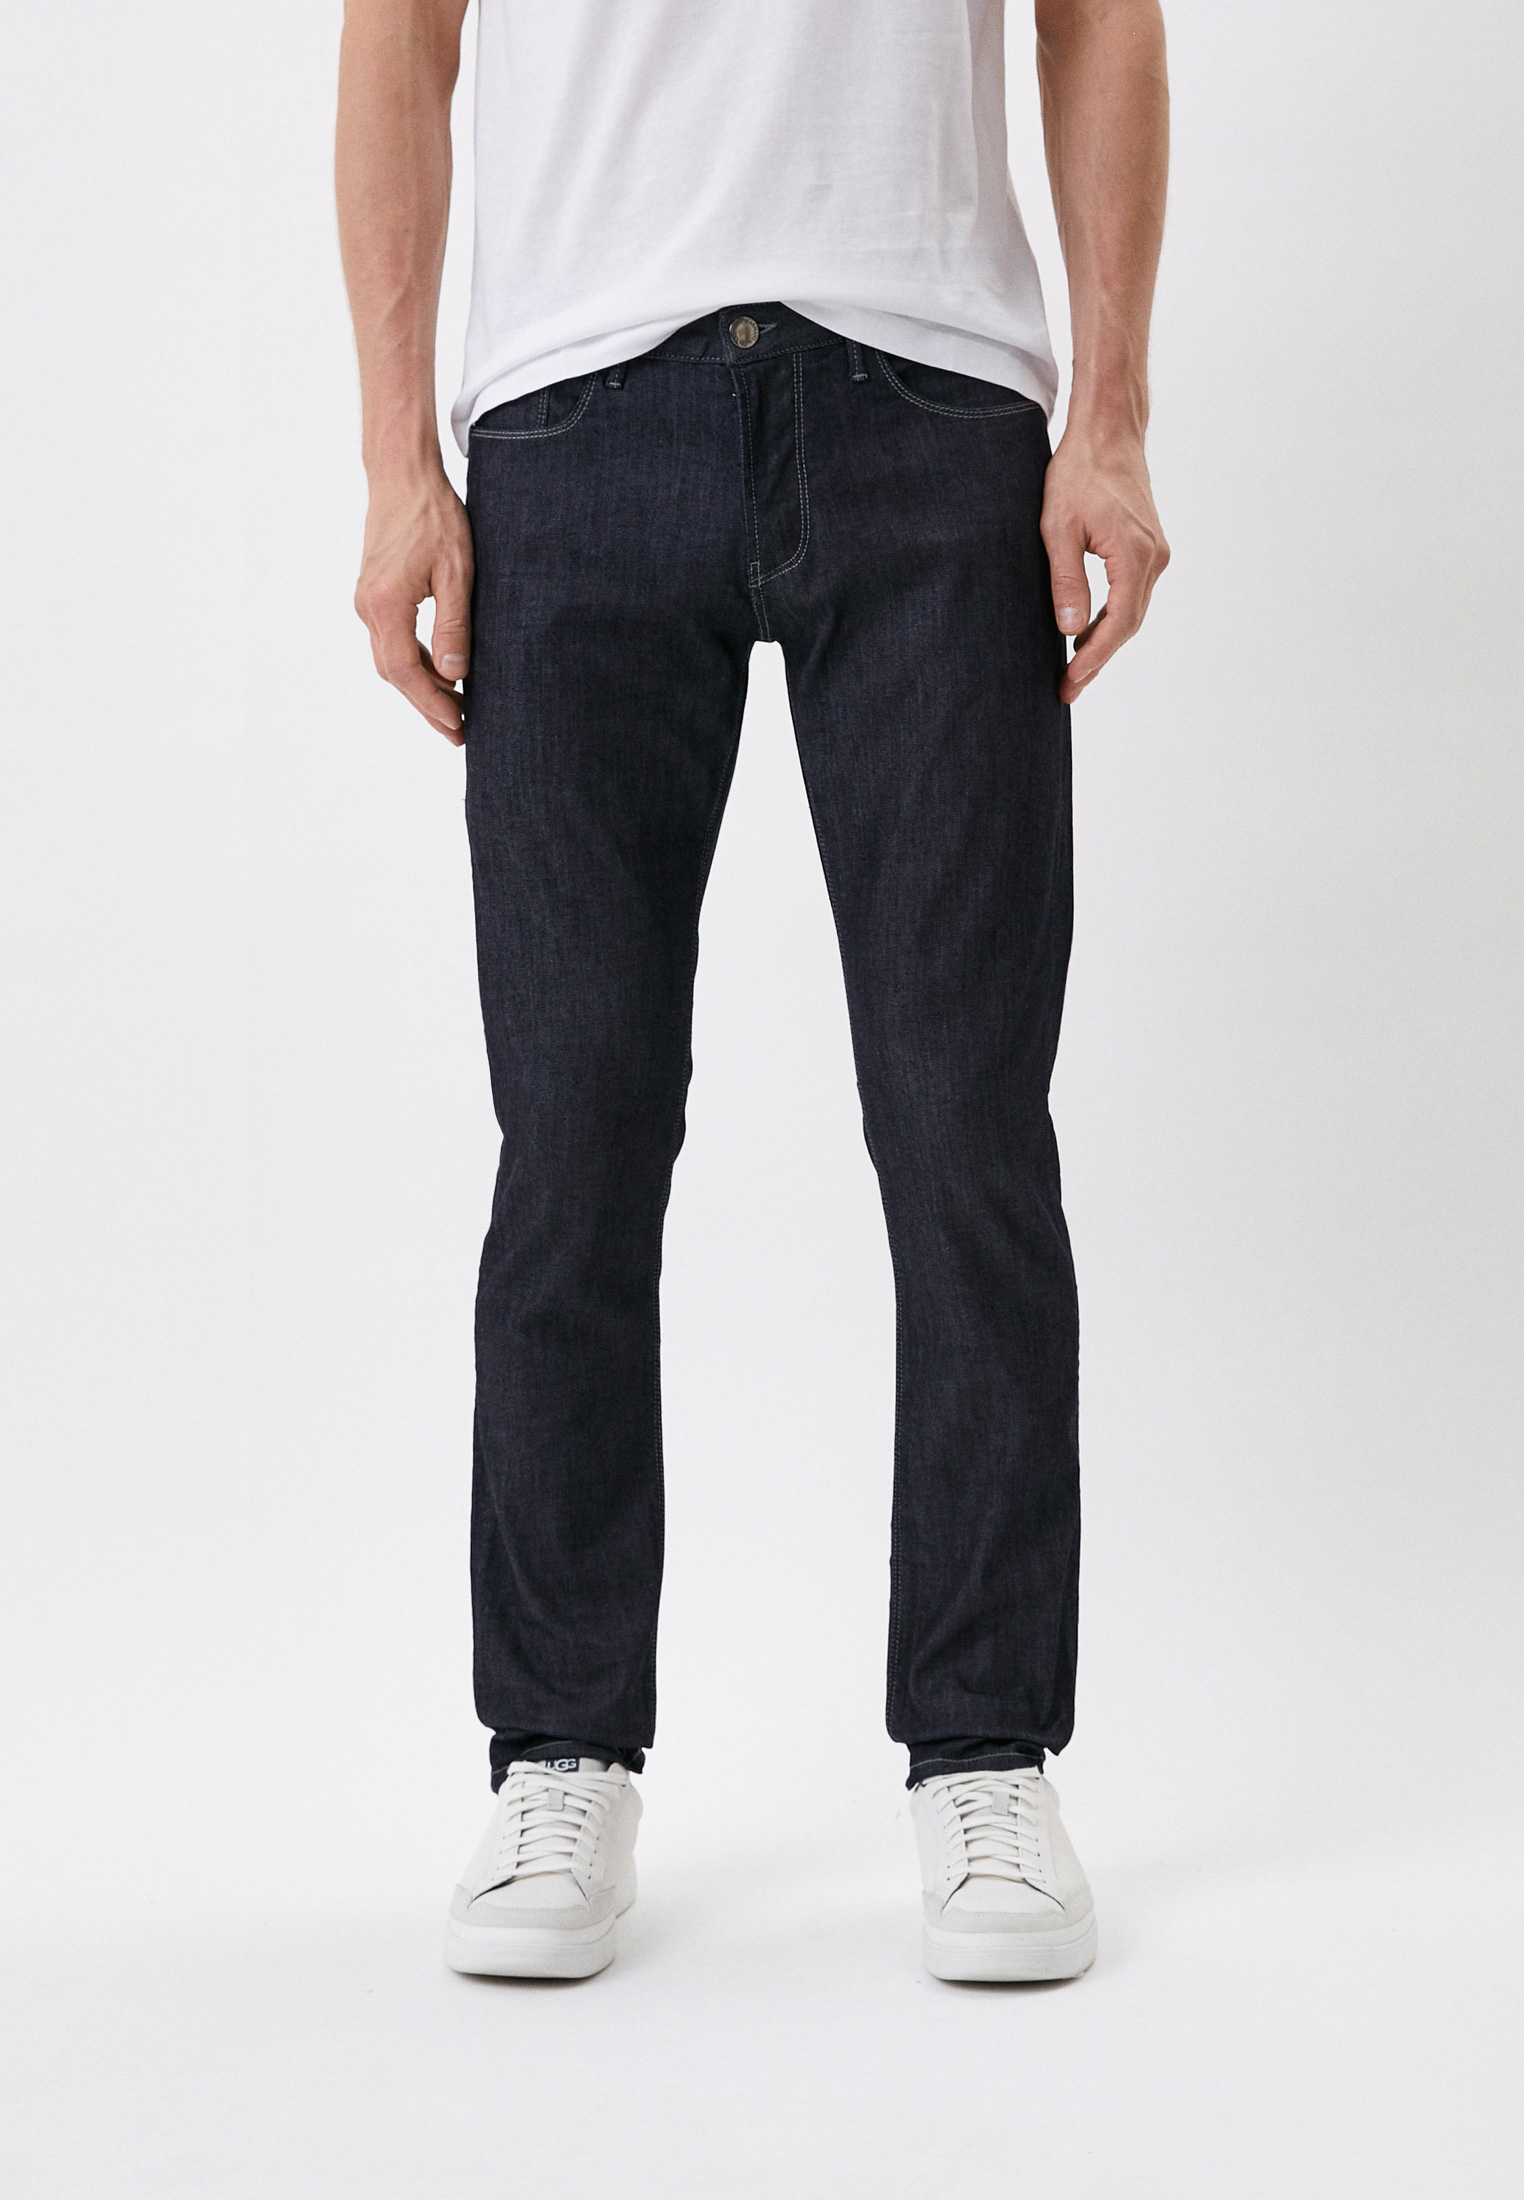 Мужские зауженные джинсы Emporio Armani (Эмпорио Армани) 8N1J06 1D85Z: изображение 2